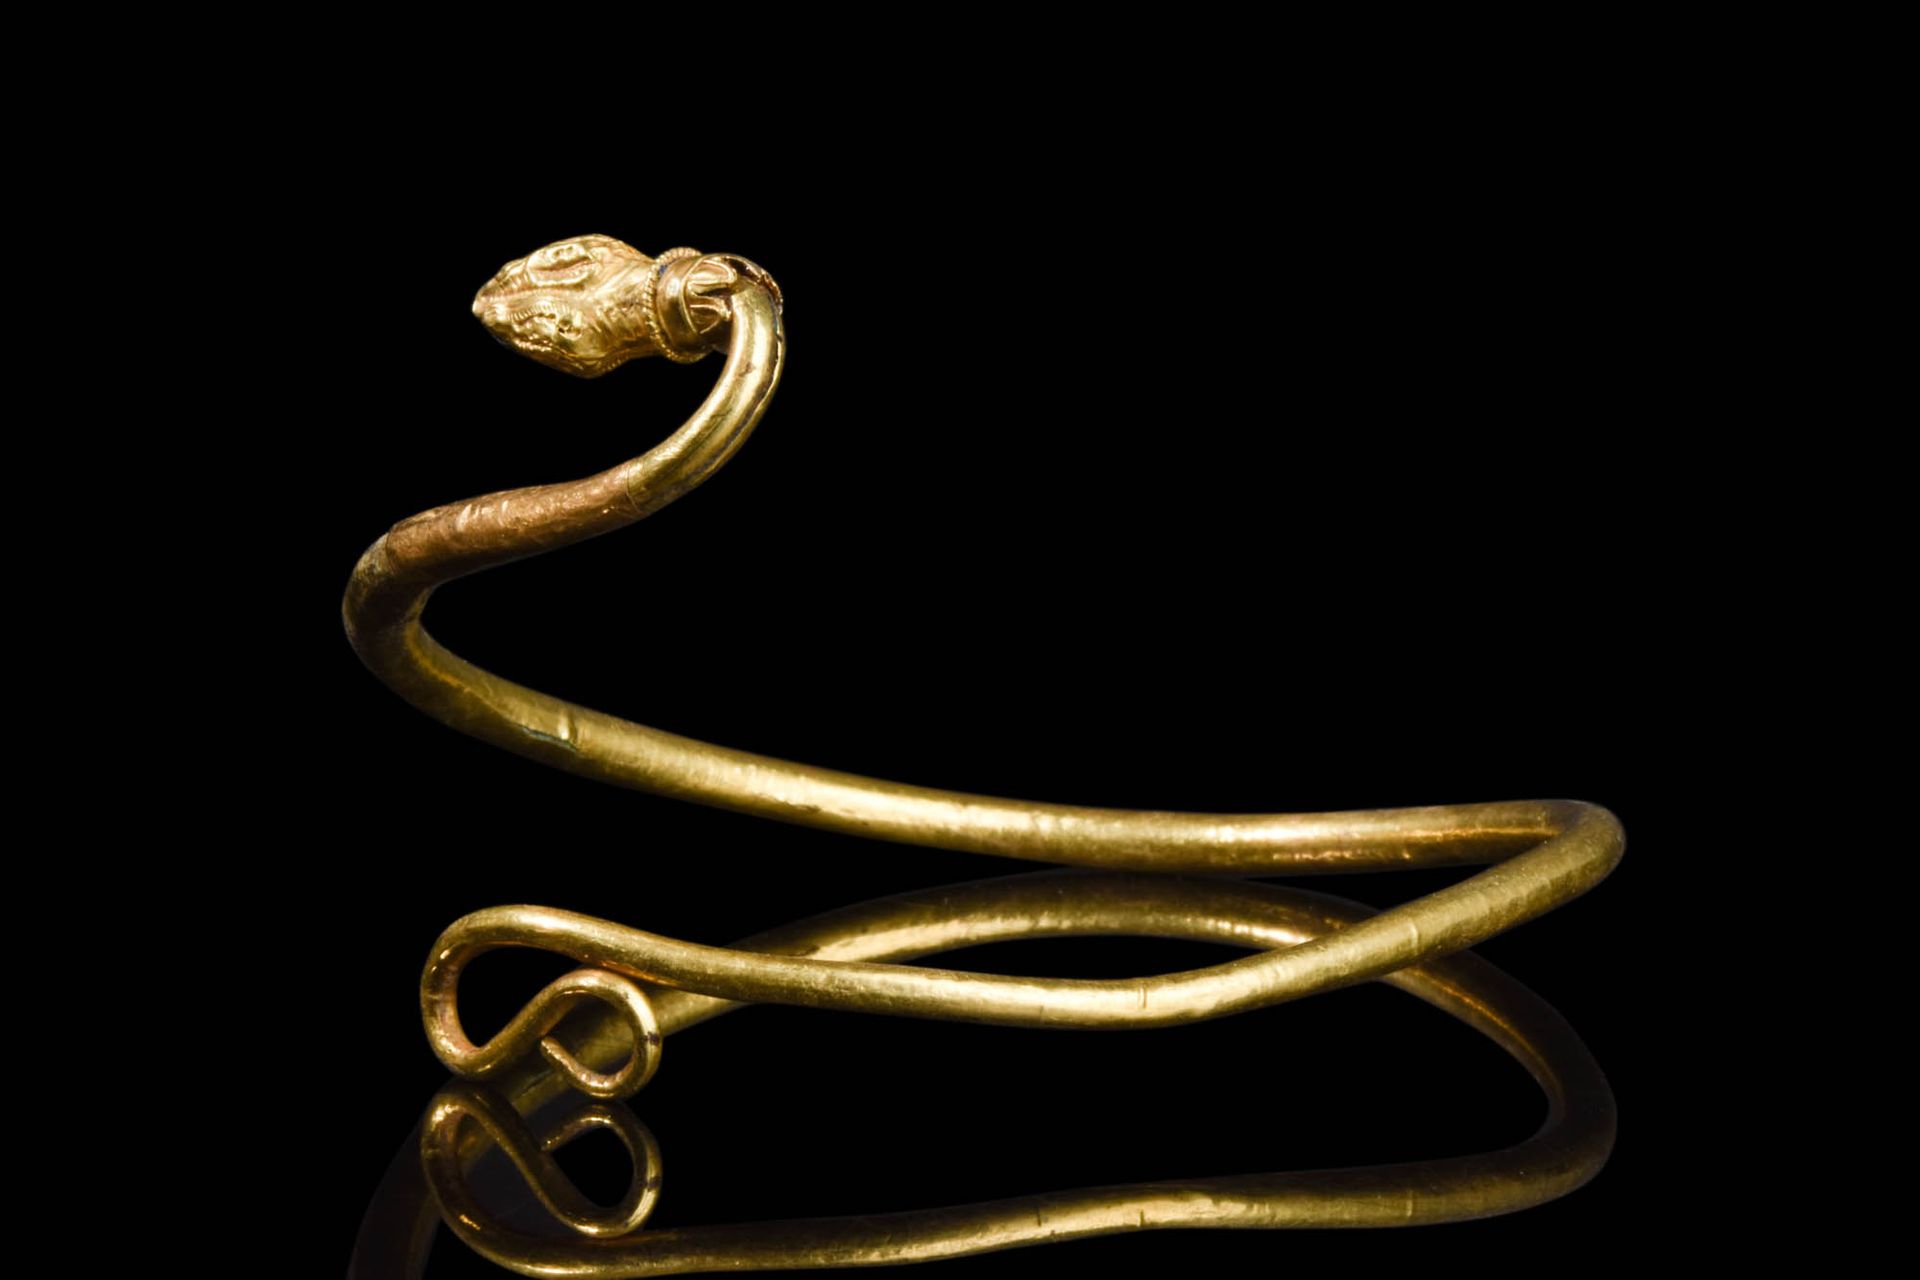 HEAVY PTOLEMAIC GOLD ARM RING Ptolemäische Periode, ca. 525 - 30 V. CHR.
Ein sch&hellip;